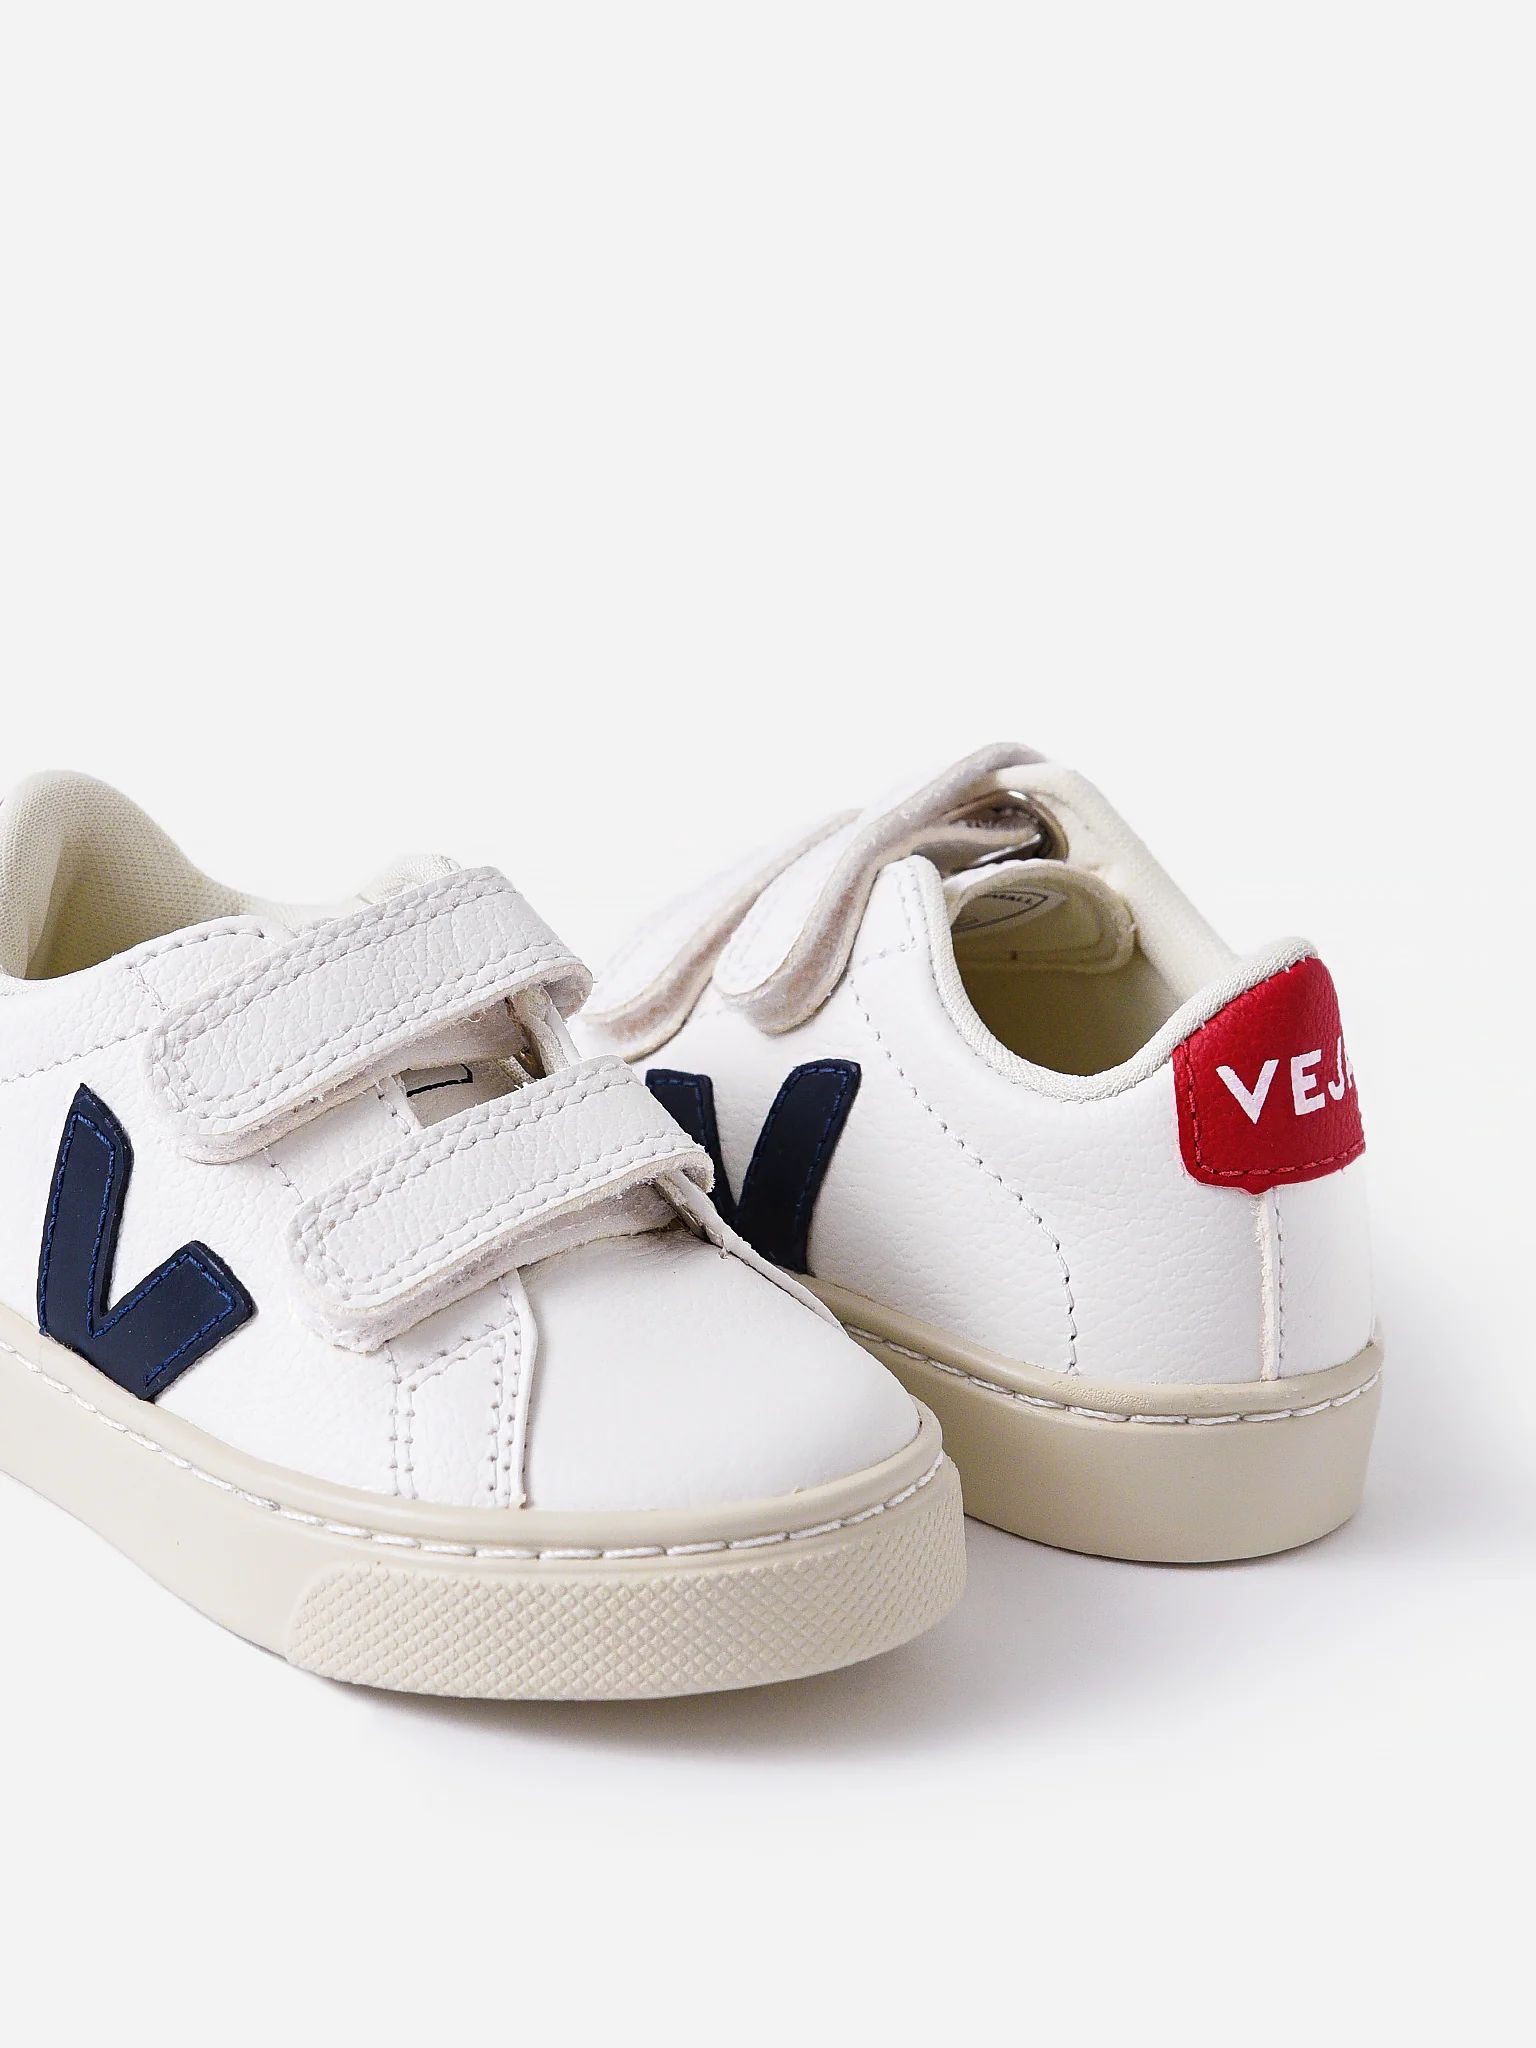 VEJA
                      
                     Kids' Small Esplar Sneaker | Saint Bernard